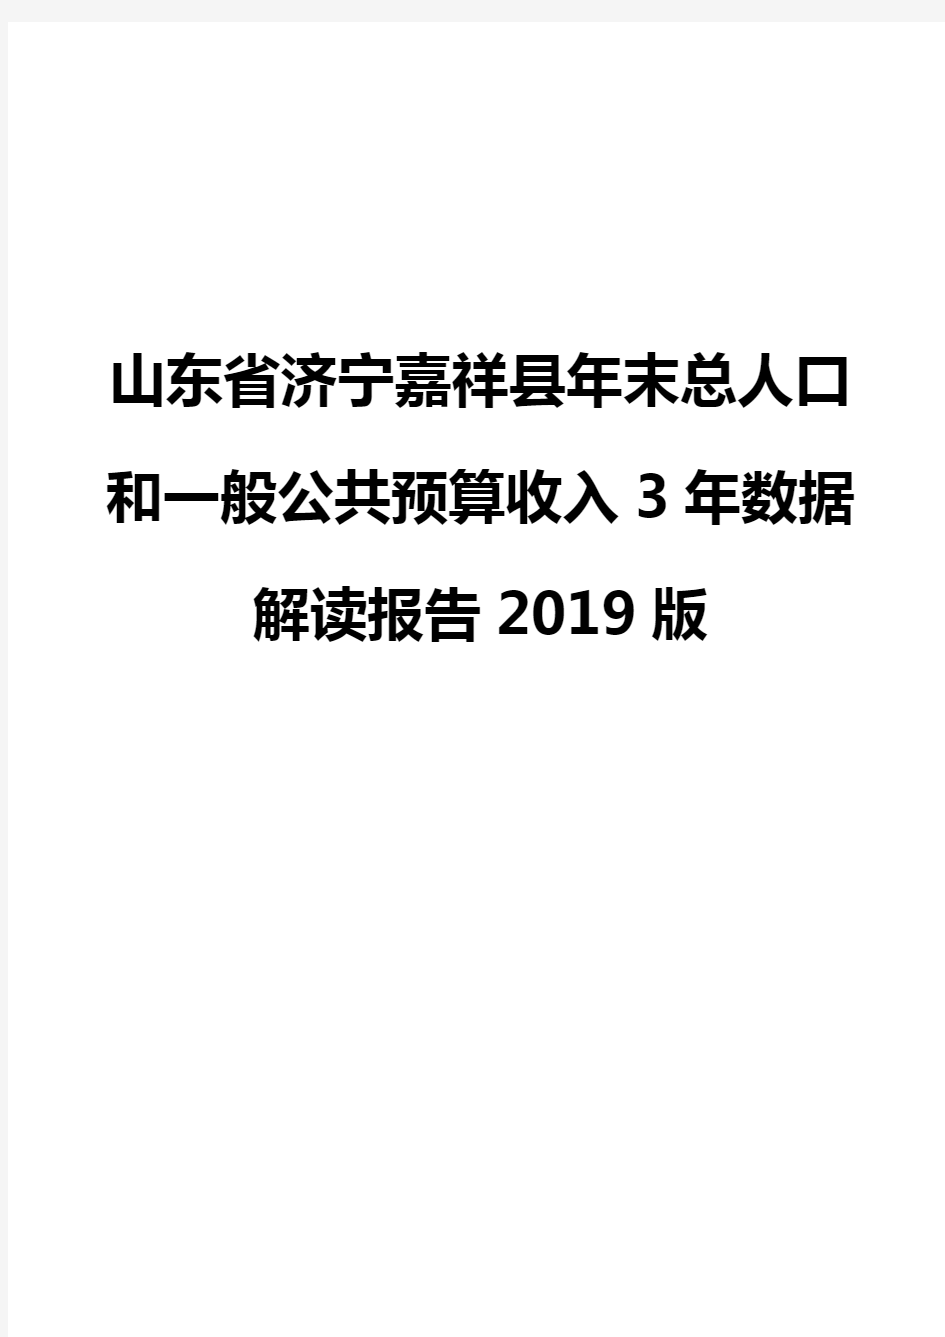 山东省济宁嘉祥县年末总人口和一般公共预算收入3年数据解读报告2019版